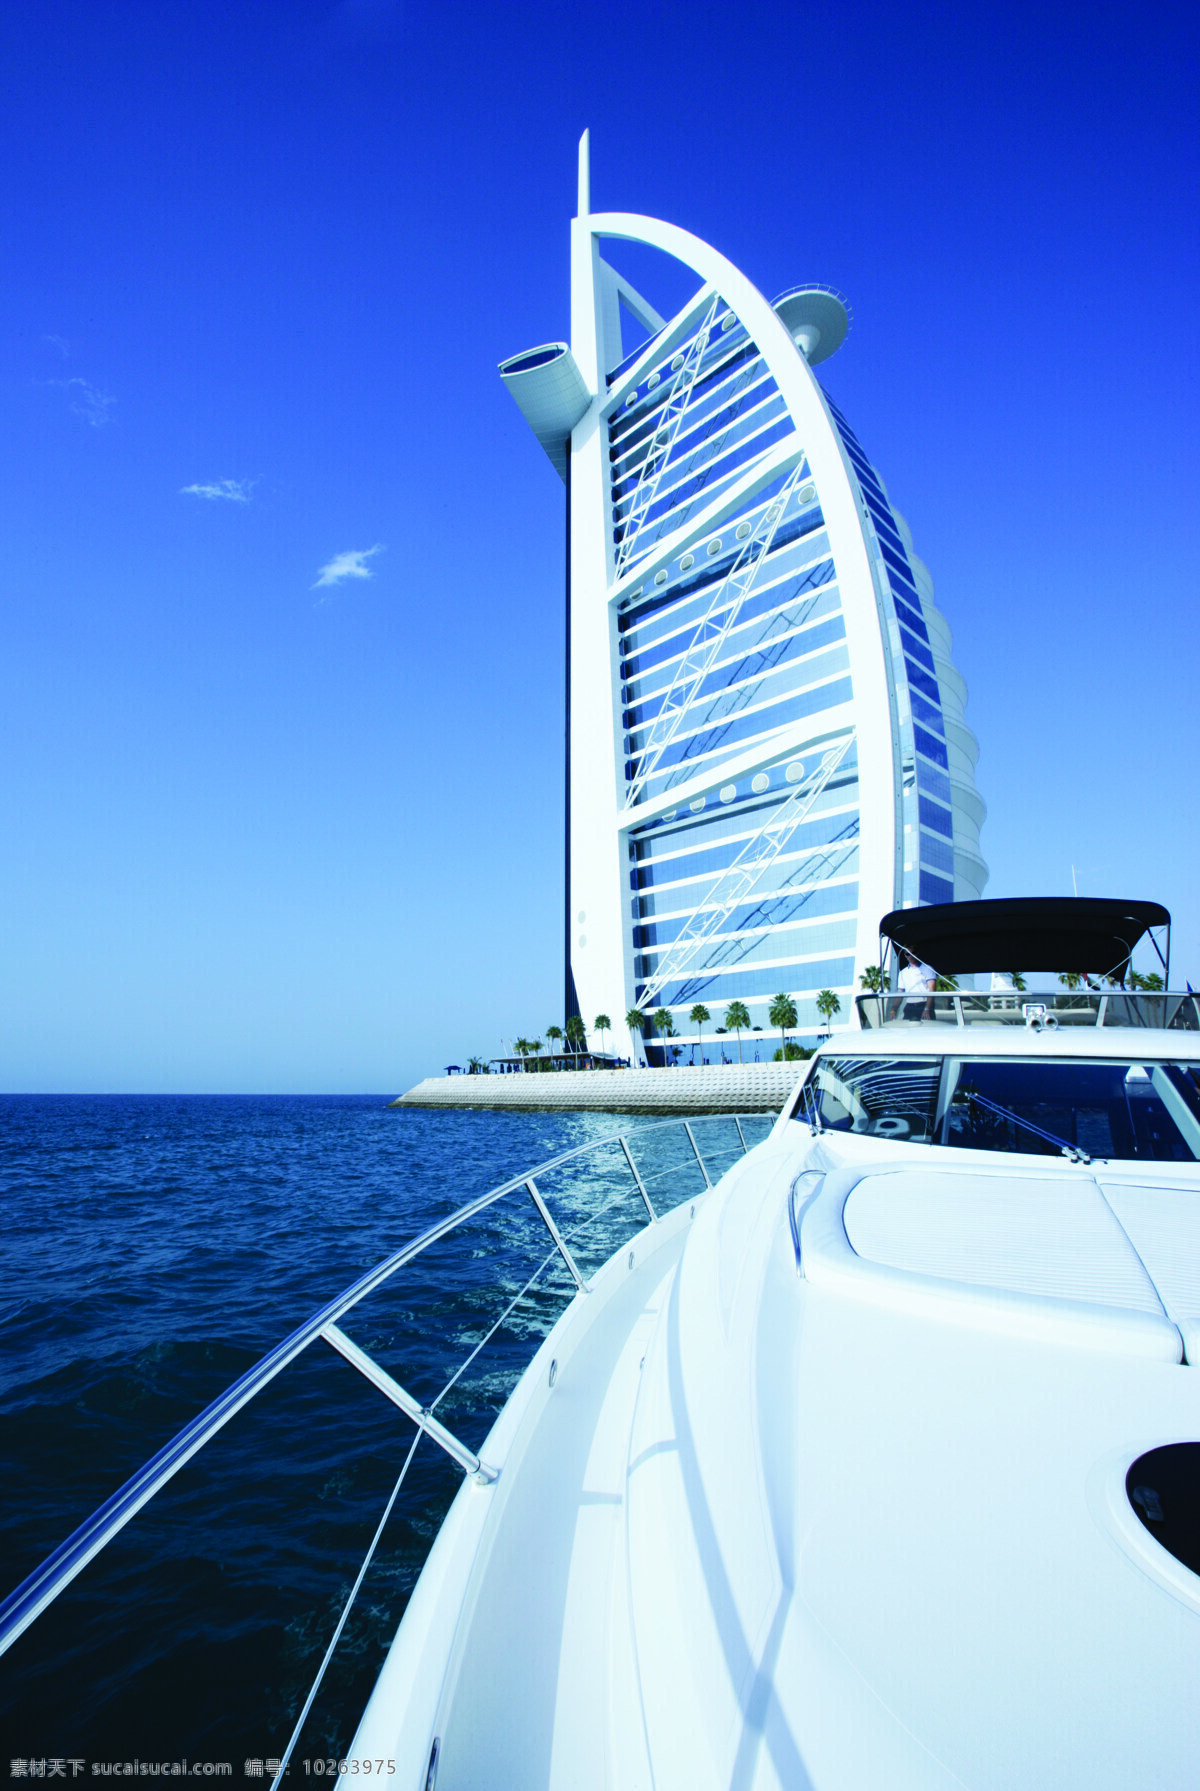 迪拜帆船酒店 迪拜 帆船酒店 星级酒店 旅游摄影 国外旅游 摄影图库